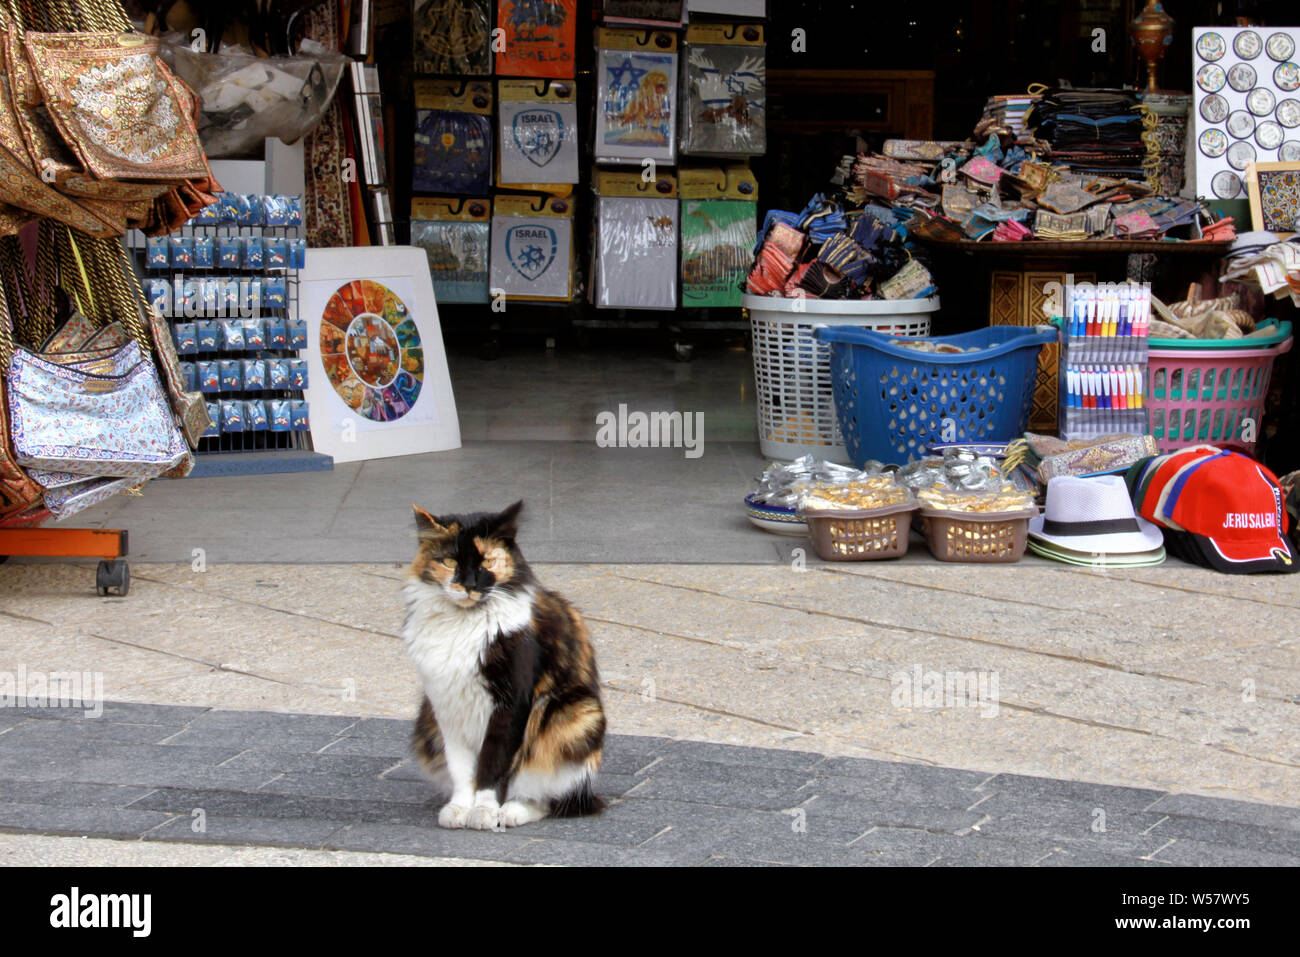 Un simpático gato salvaje se encuentra fuera de una tienda de souvenirs en la Ciudad Vieja de Jerusalén, cerca de la puerta de Jaffa. Foto de stock